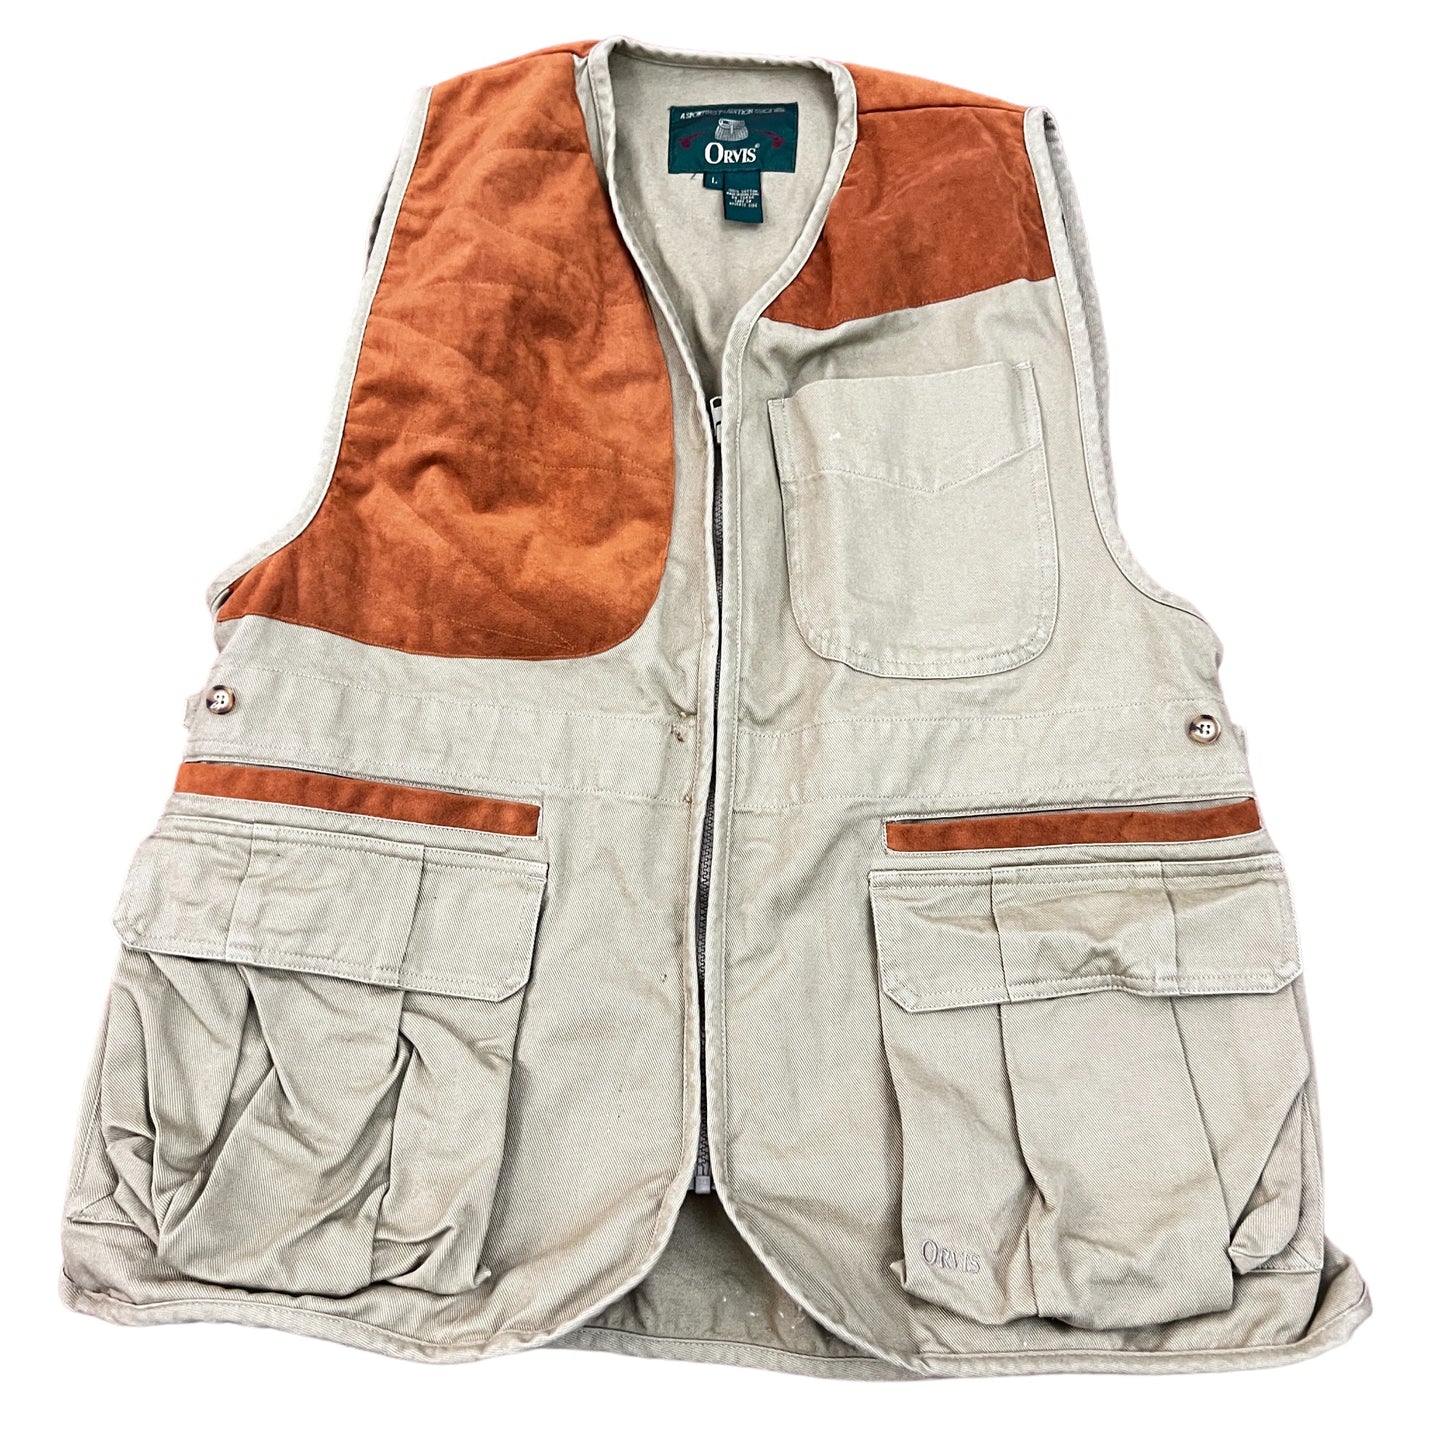 Orvis Fishing Men's Vest 100% Cotton Size Large